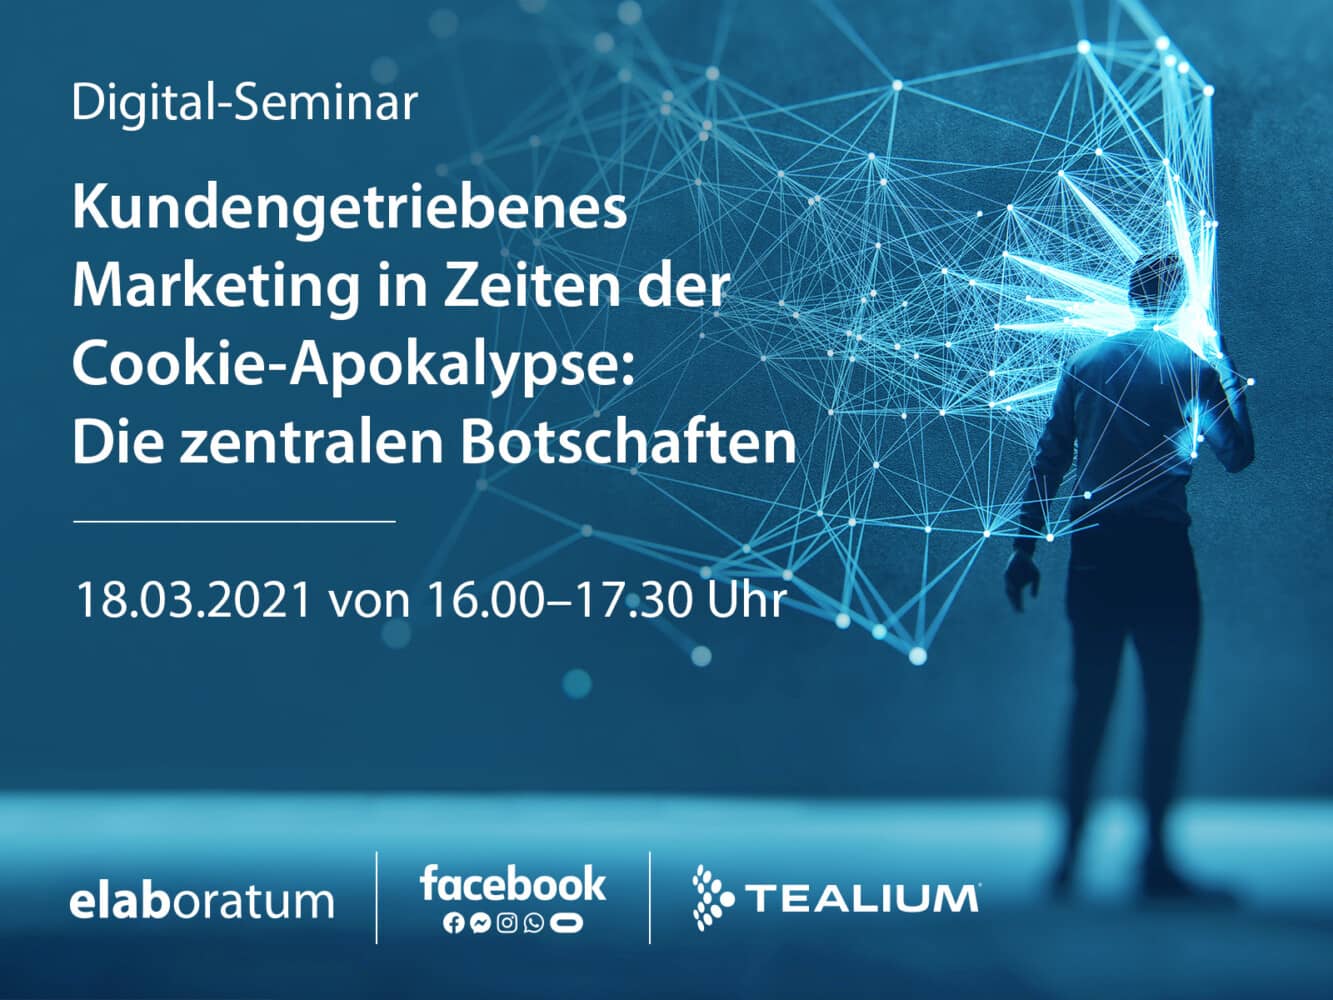 Digital-Seminar mit Facebook und Tealium: „Kundengetriebenes Marketing in Zeiten der Cookie-Apokalypse“